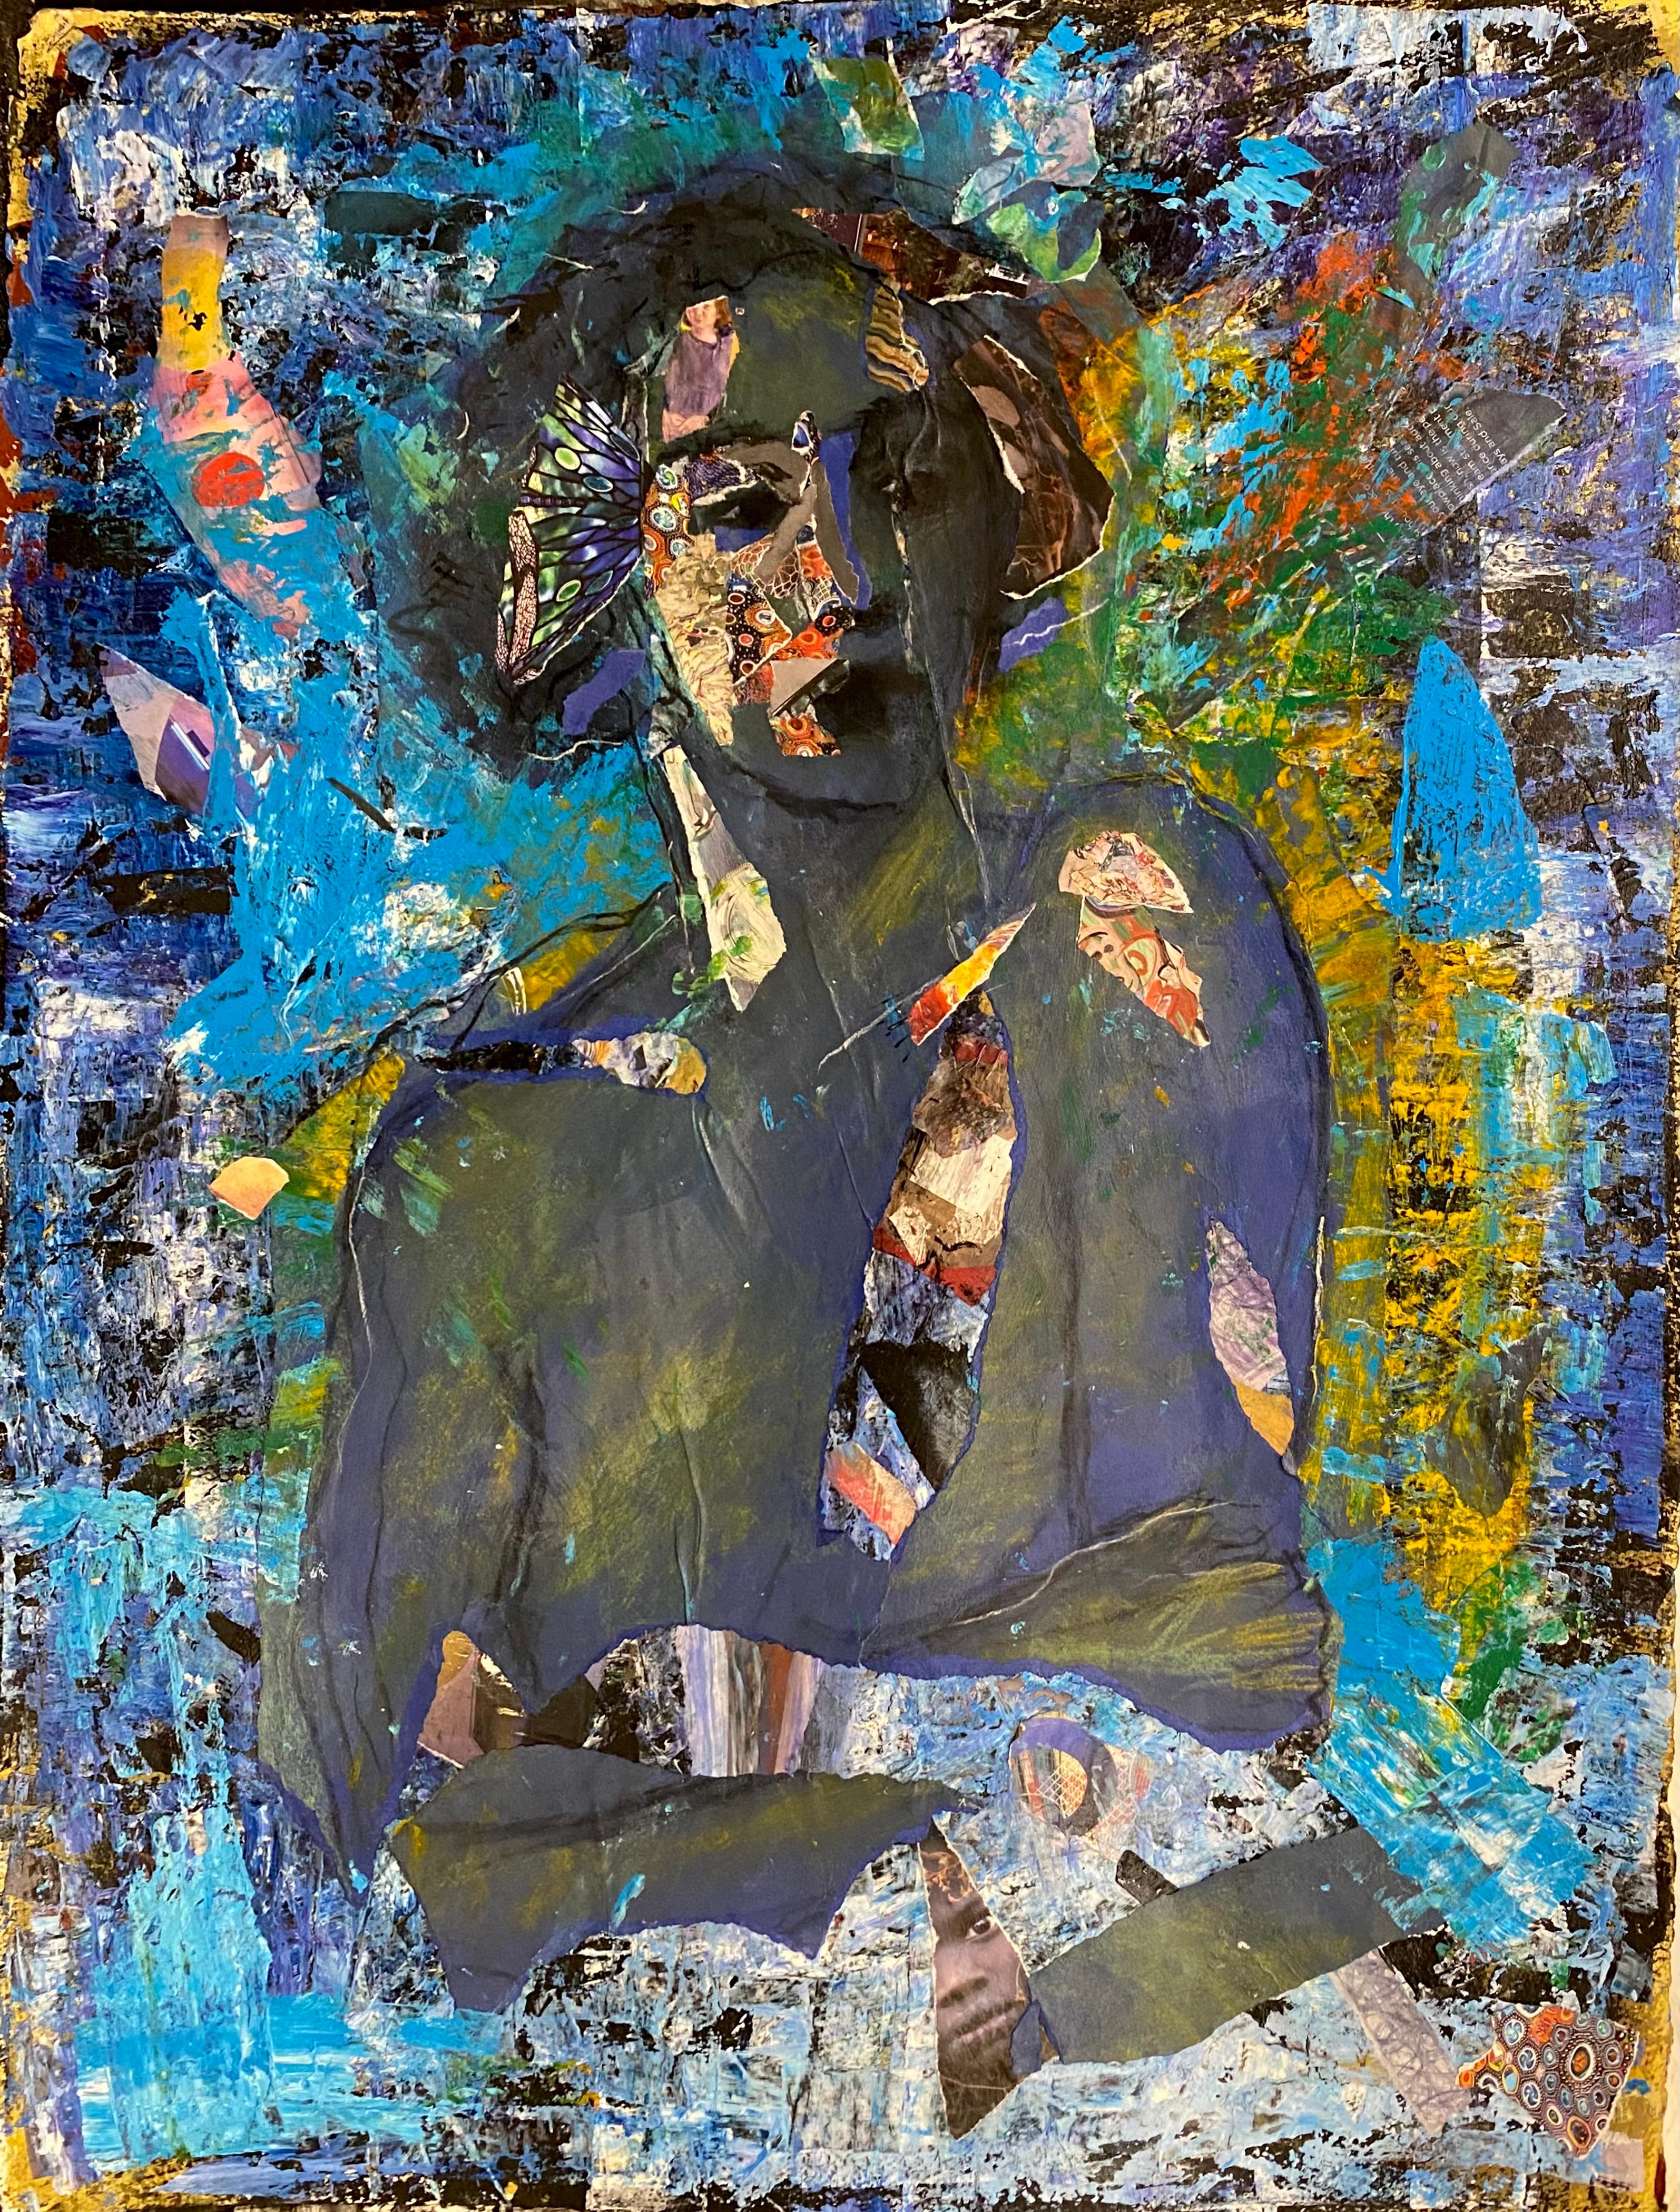 Blaues Indigo, Zeichnungscollage, weibliche Figur mit abstrakten Mustern, leuchtende Blautöne